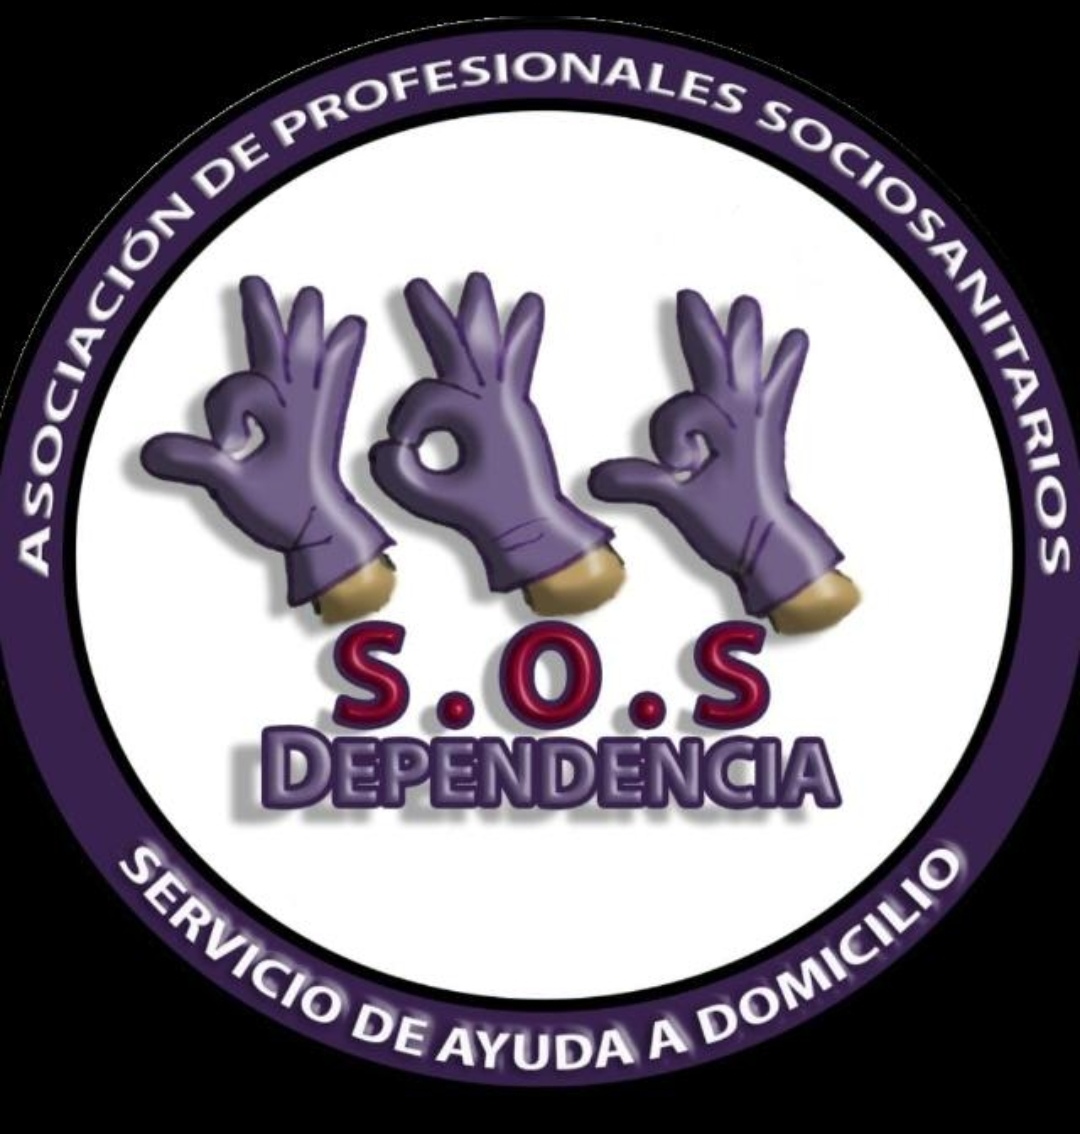 SOS Dependencia